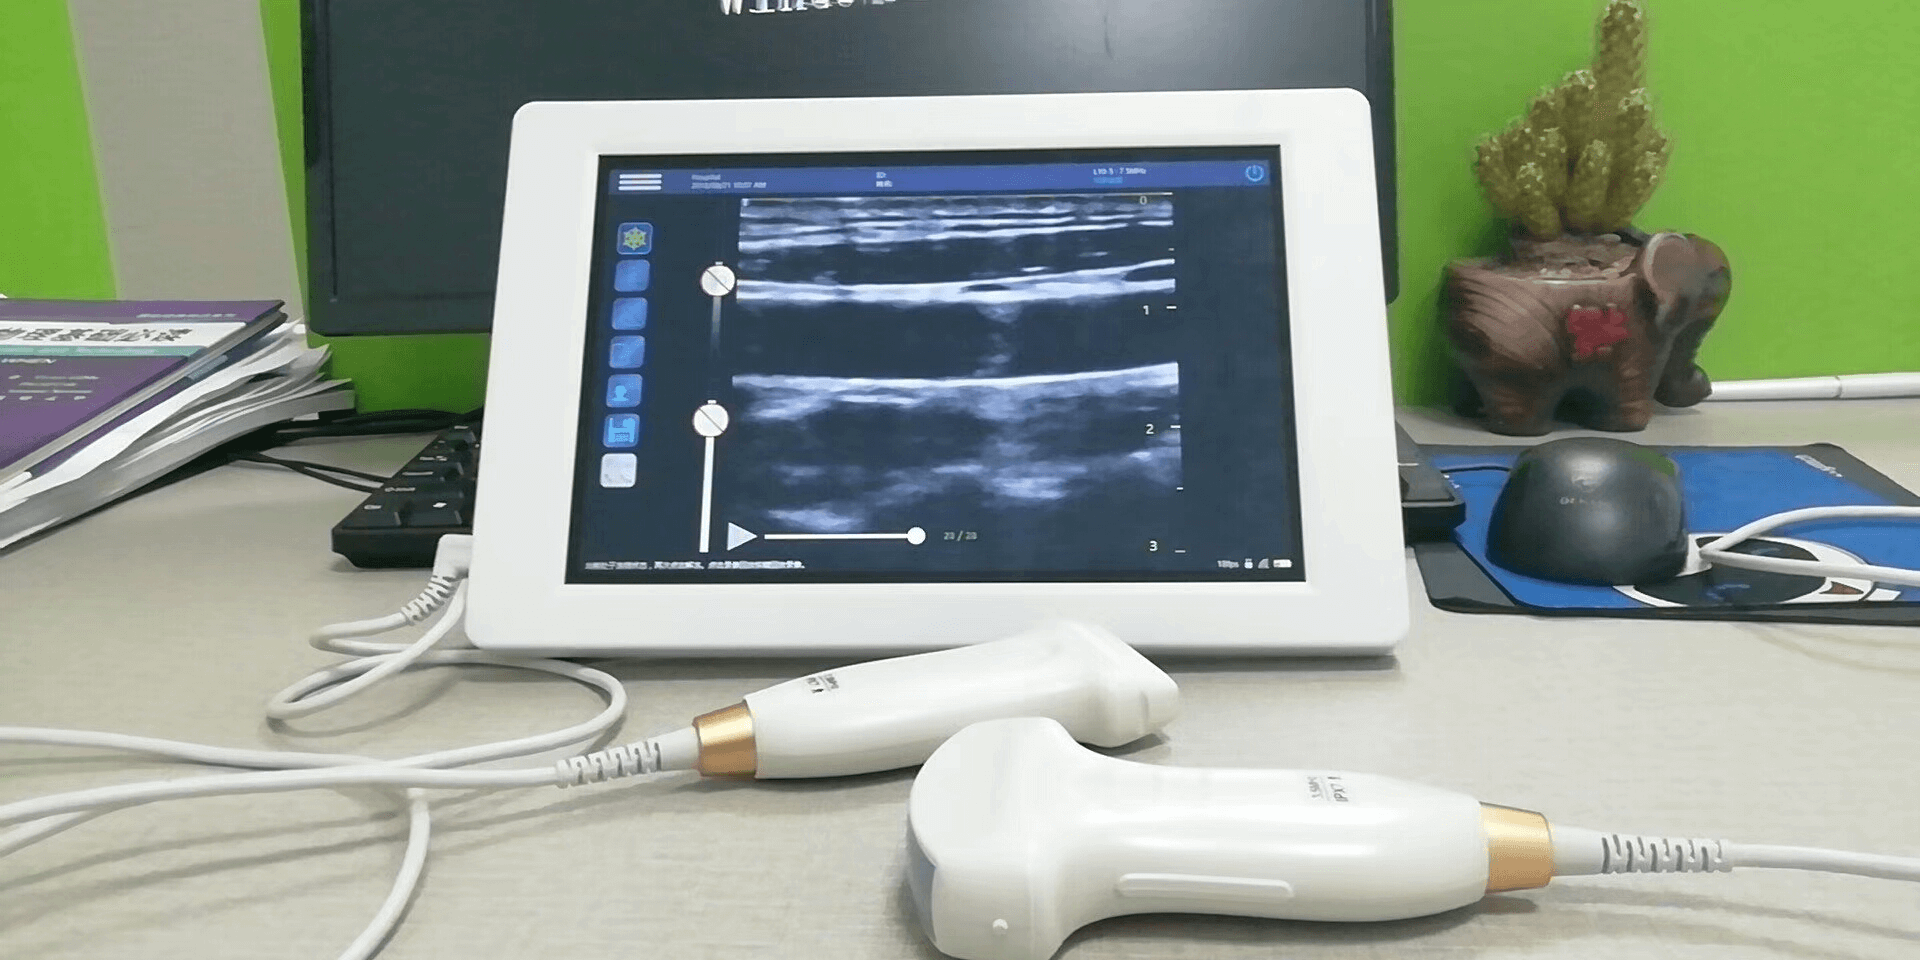 Mobile USB veterinary ultrasound probes for sale PM V4U 6 - Pig Ultrasound